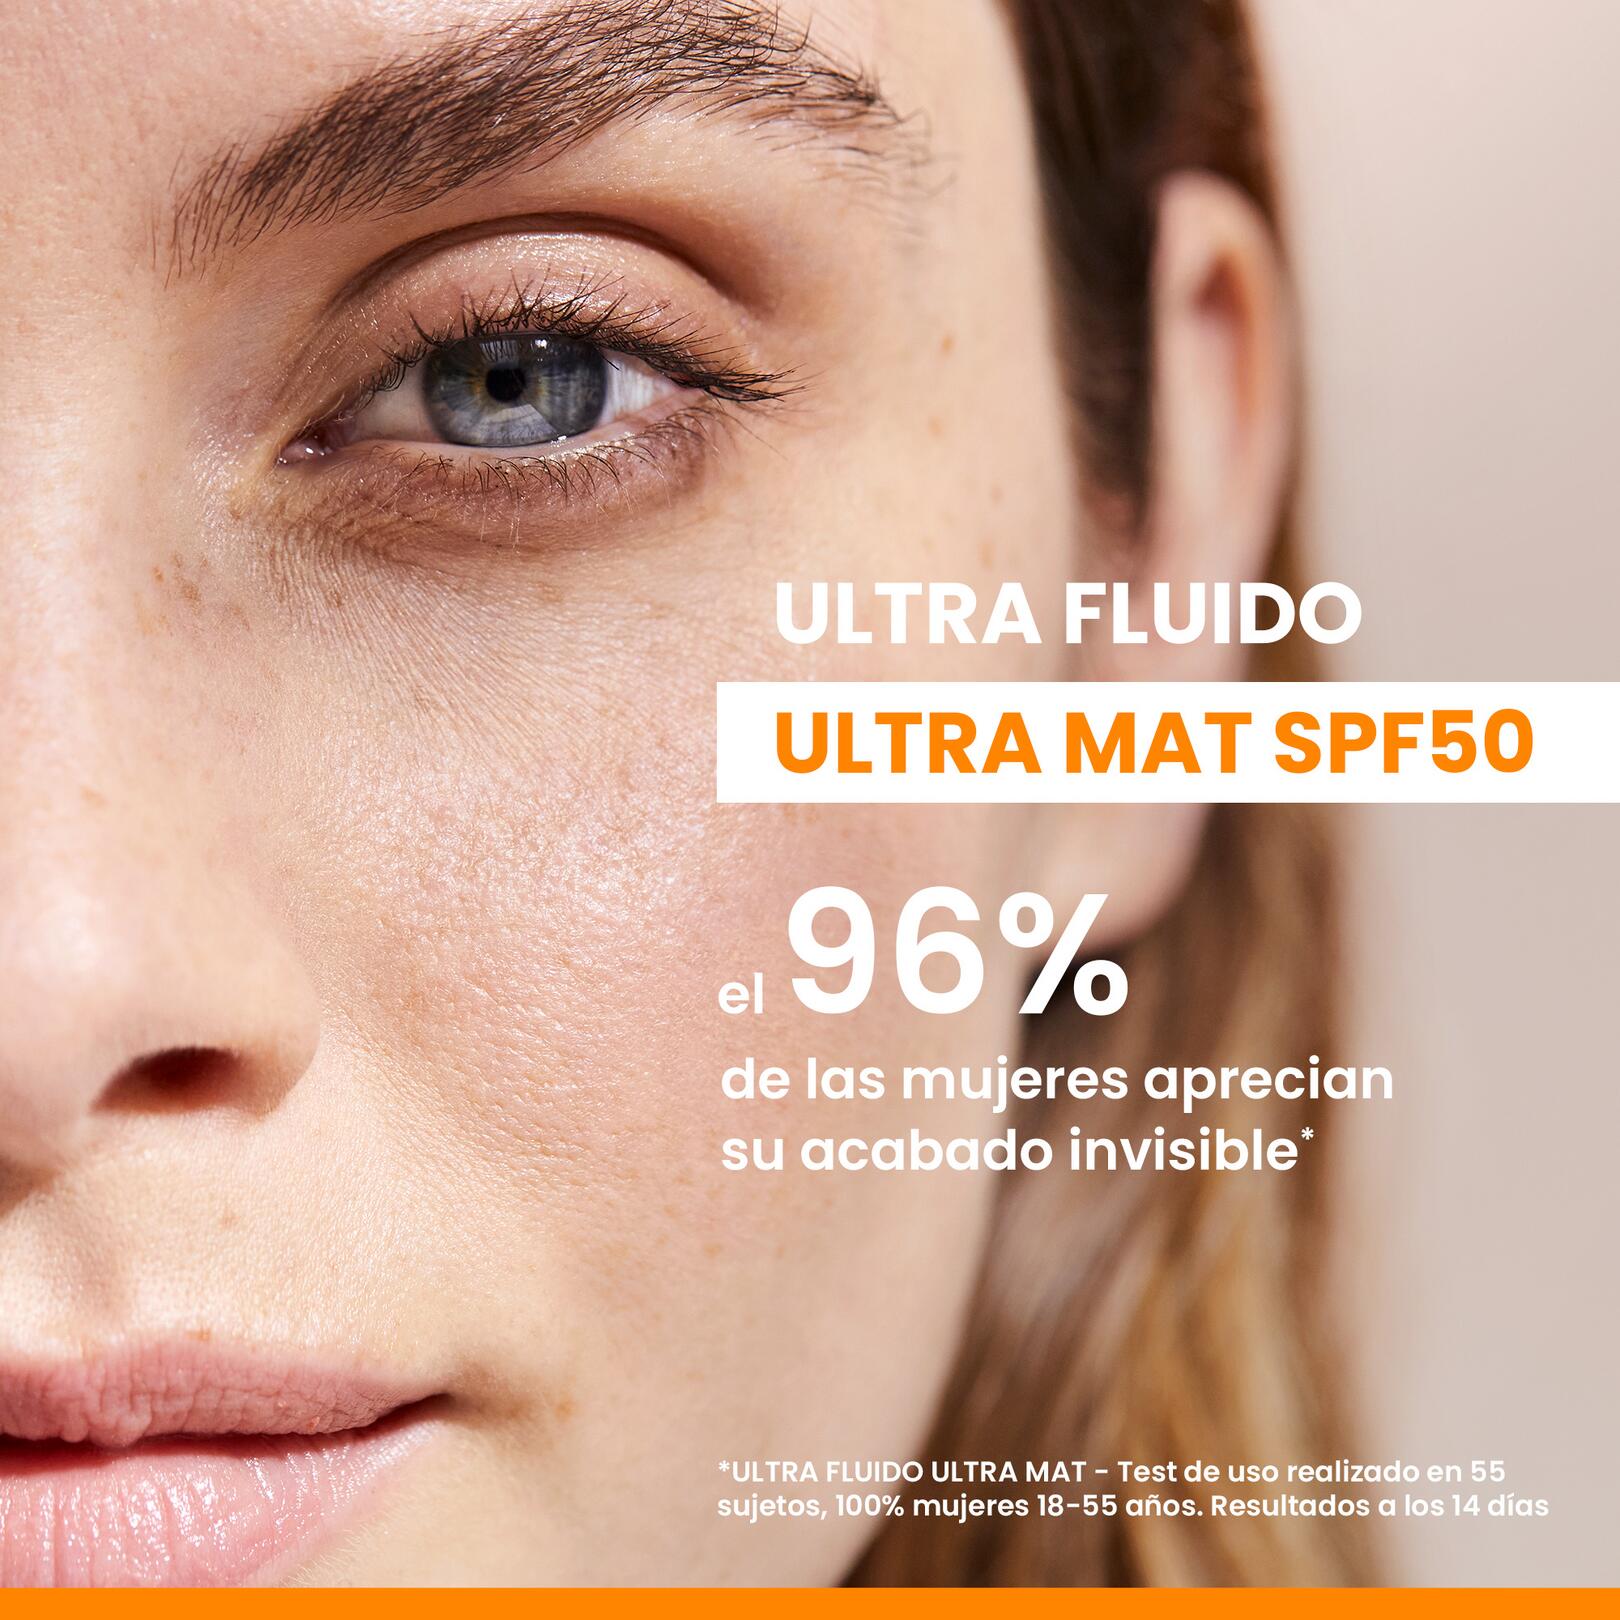 ULTRA FLUIDO ULTRA MAT SPF50